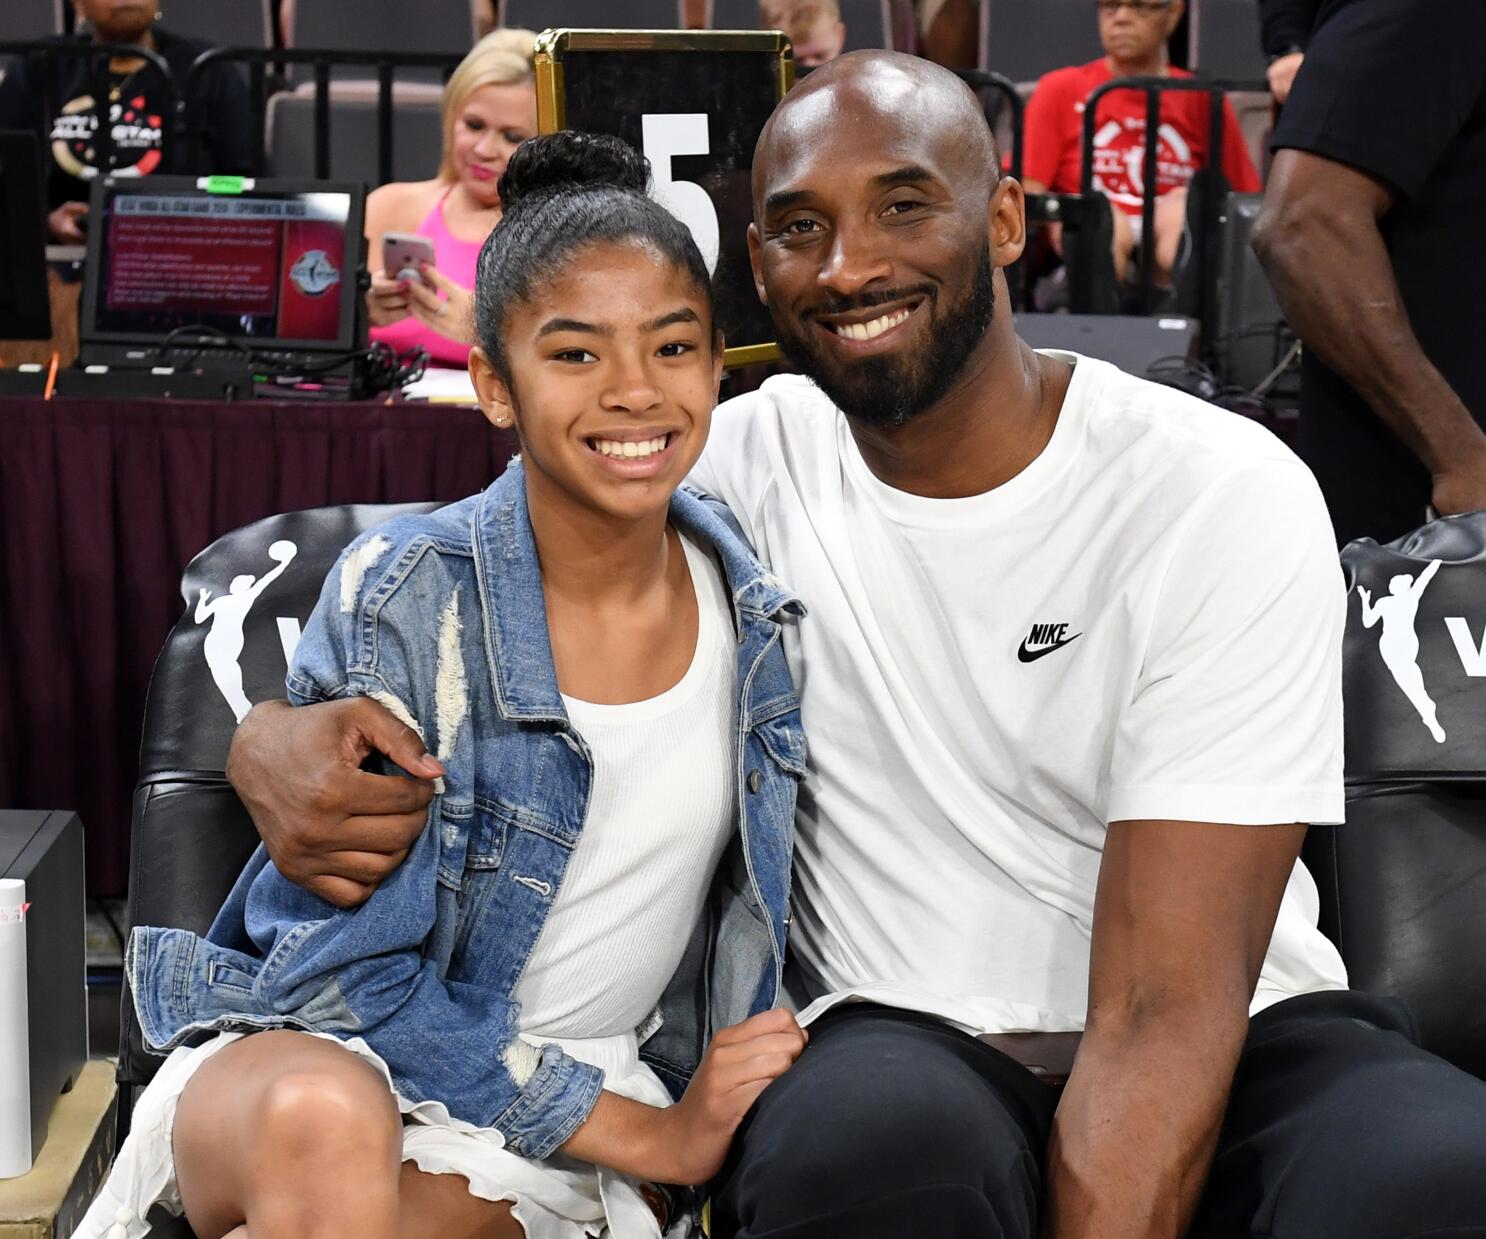 Sad,' 'devastated,' 'heartbreaking': Kobe Bryant's shocking death